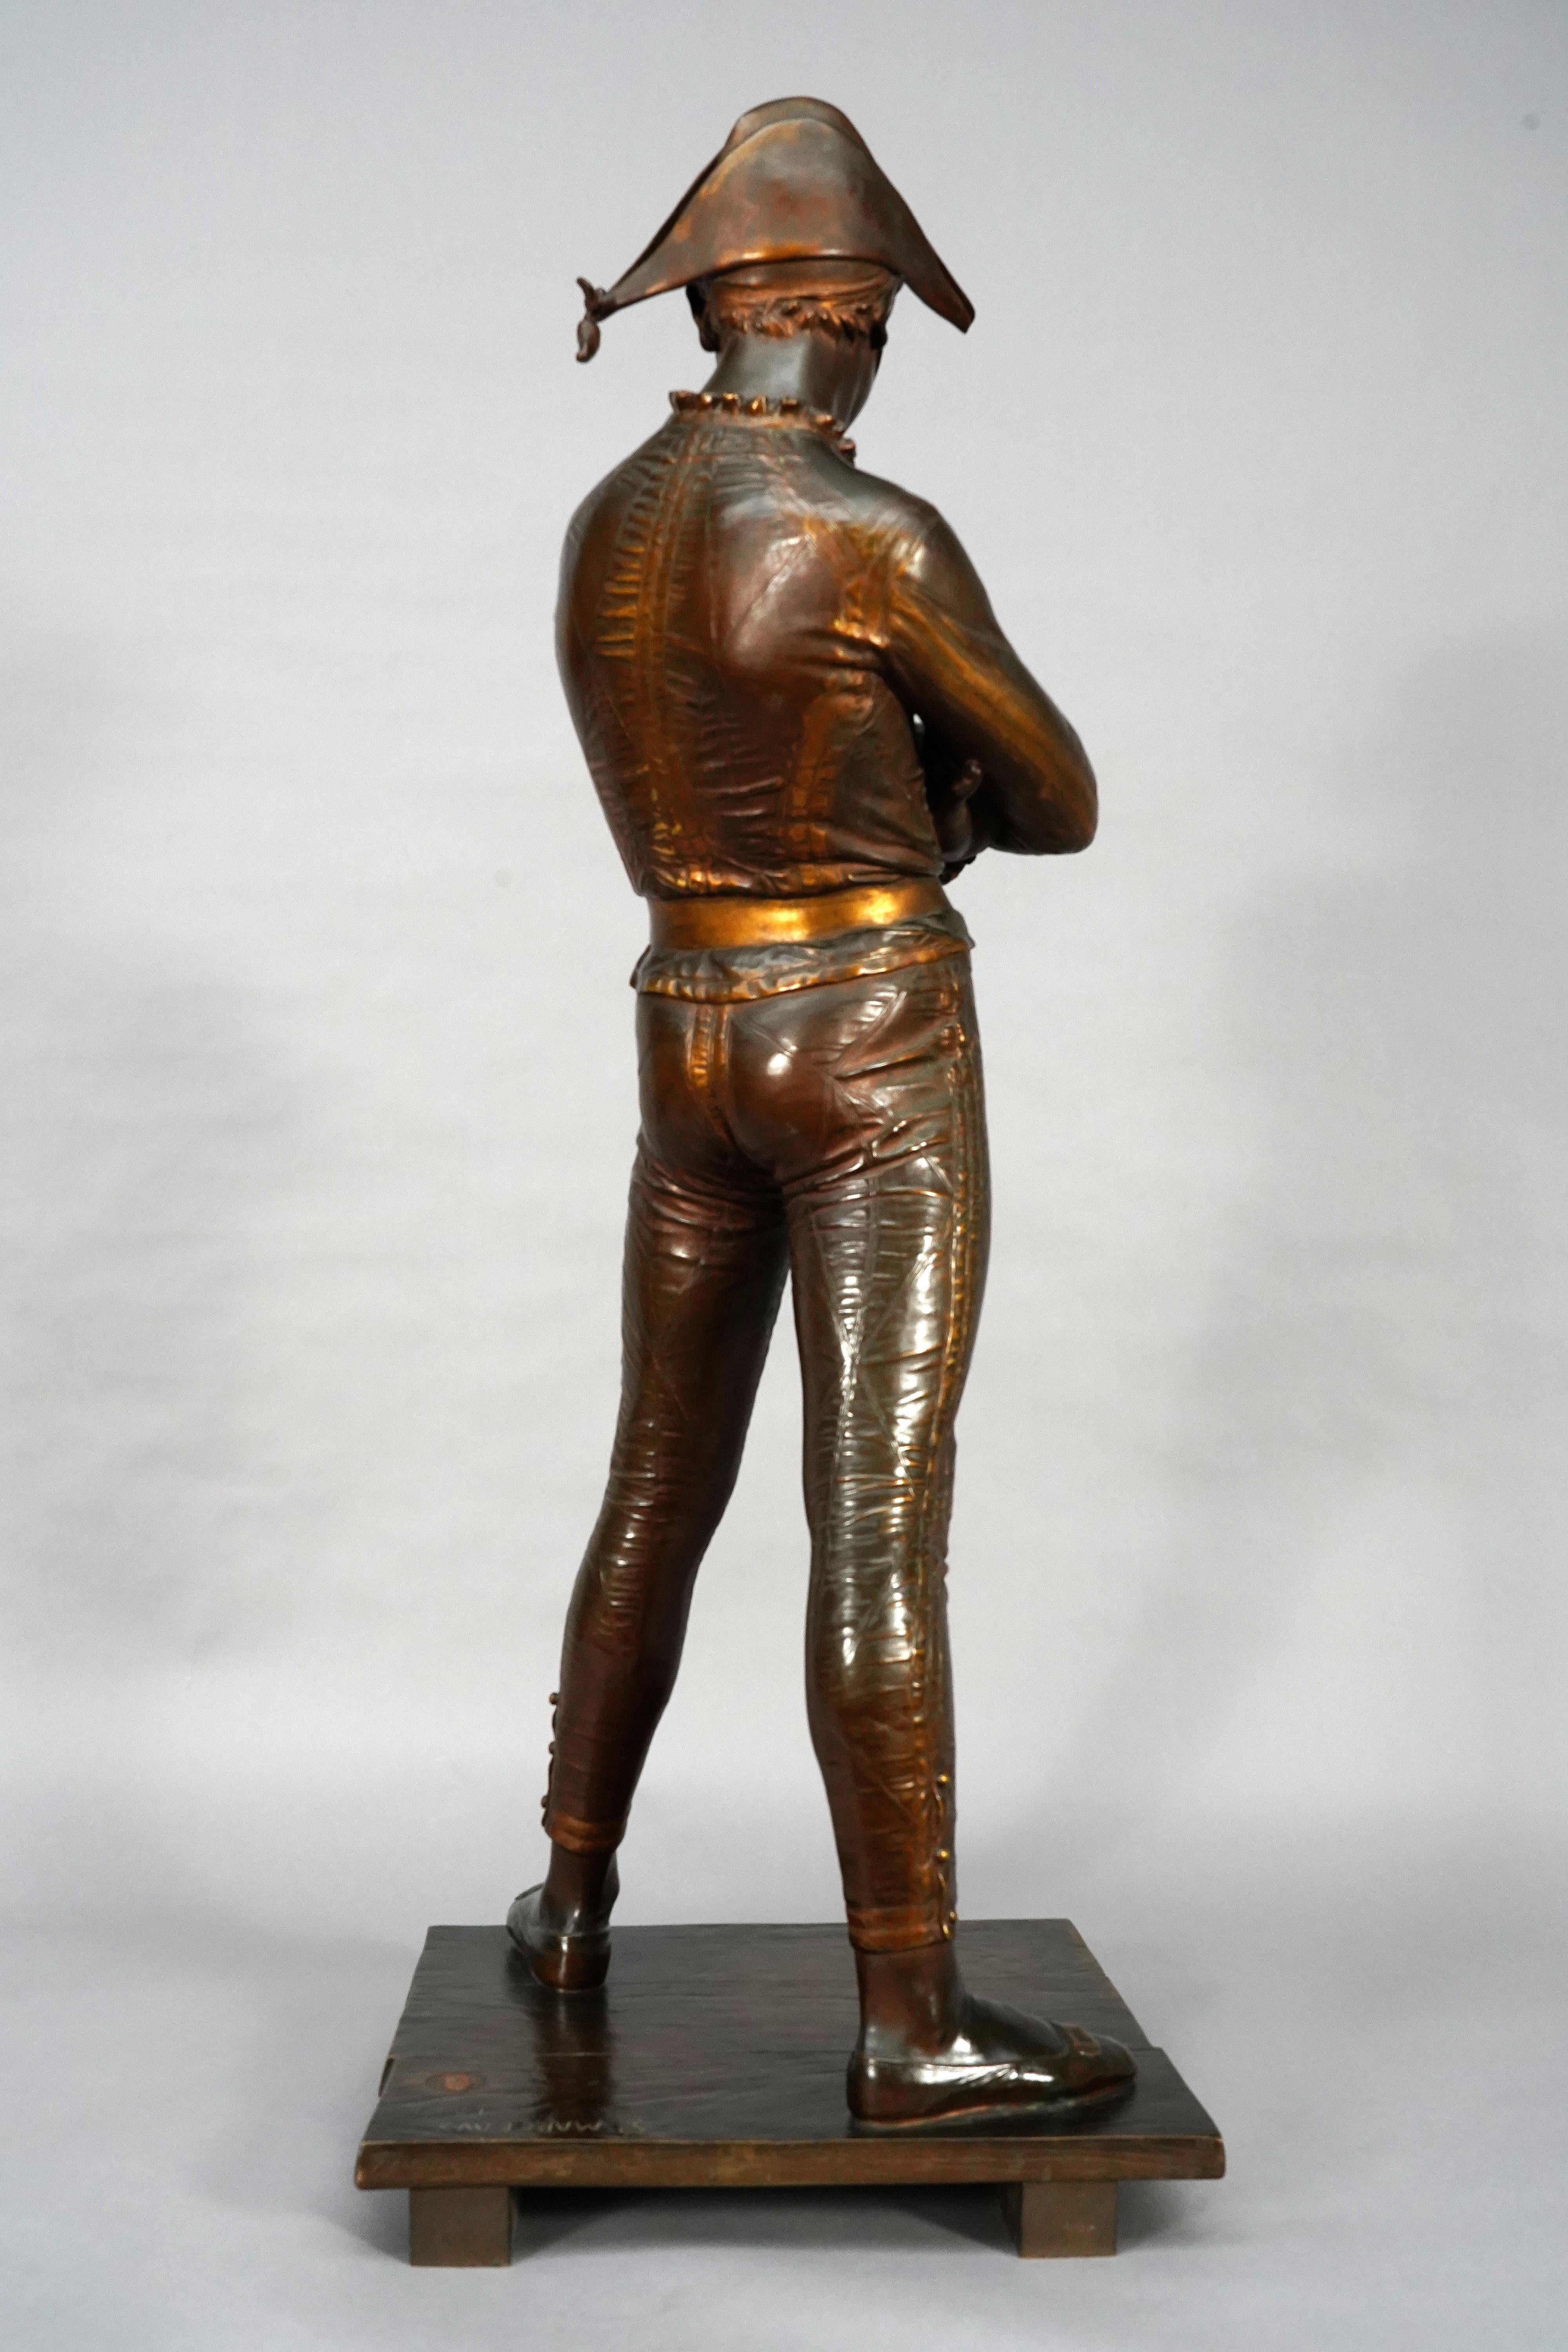 Signature de René Saint-Marceaux et date de 1879
Signé F. Barbedienne Fondeur Paris 
A. Tampons de réduction mécanique Collas
Taille réduite : 3/5

Elegante statue d'Arlequin debout, légèrement penché en arrière, en bronze patiné avec des reflets